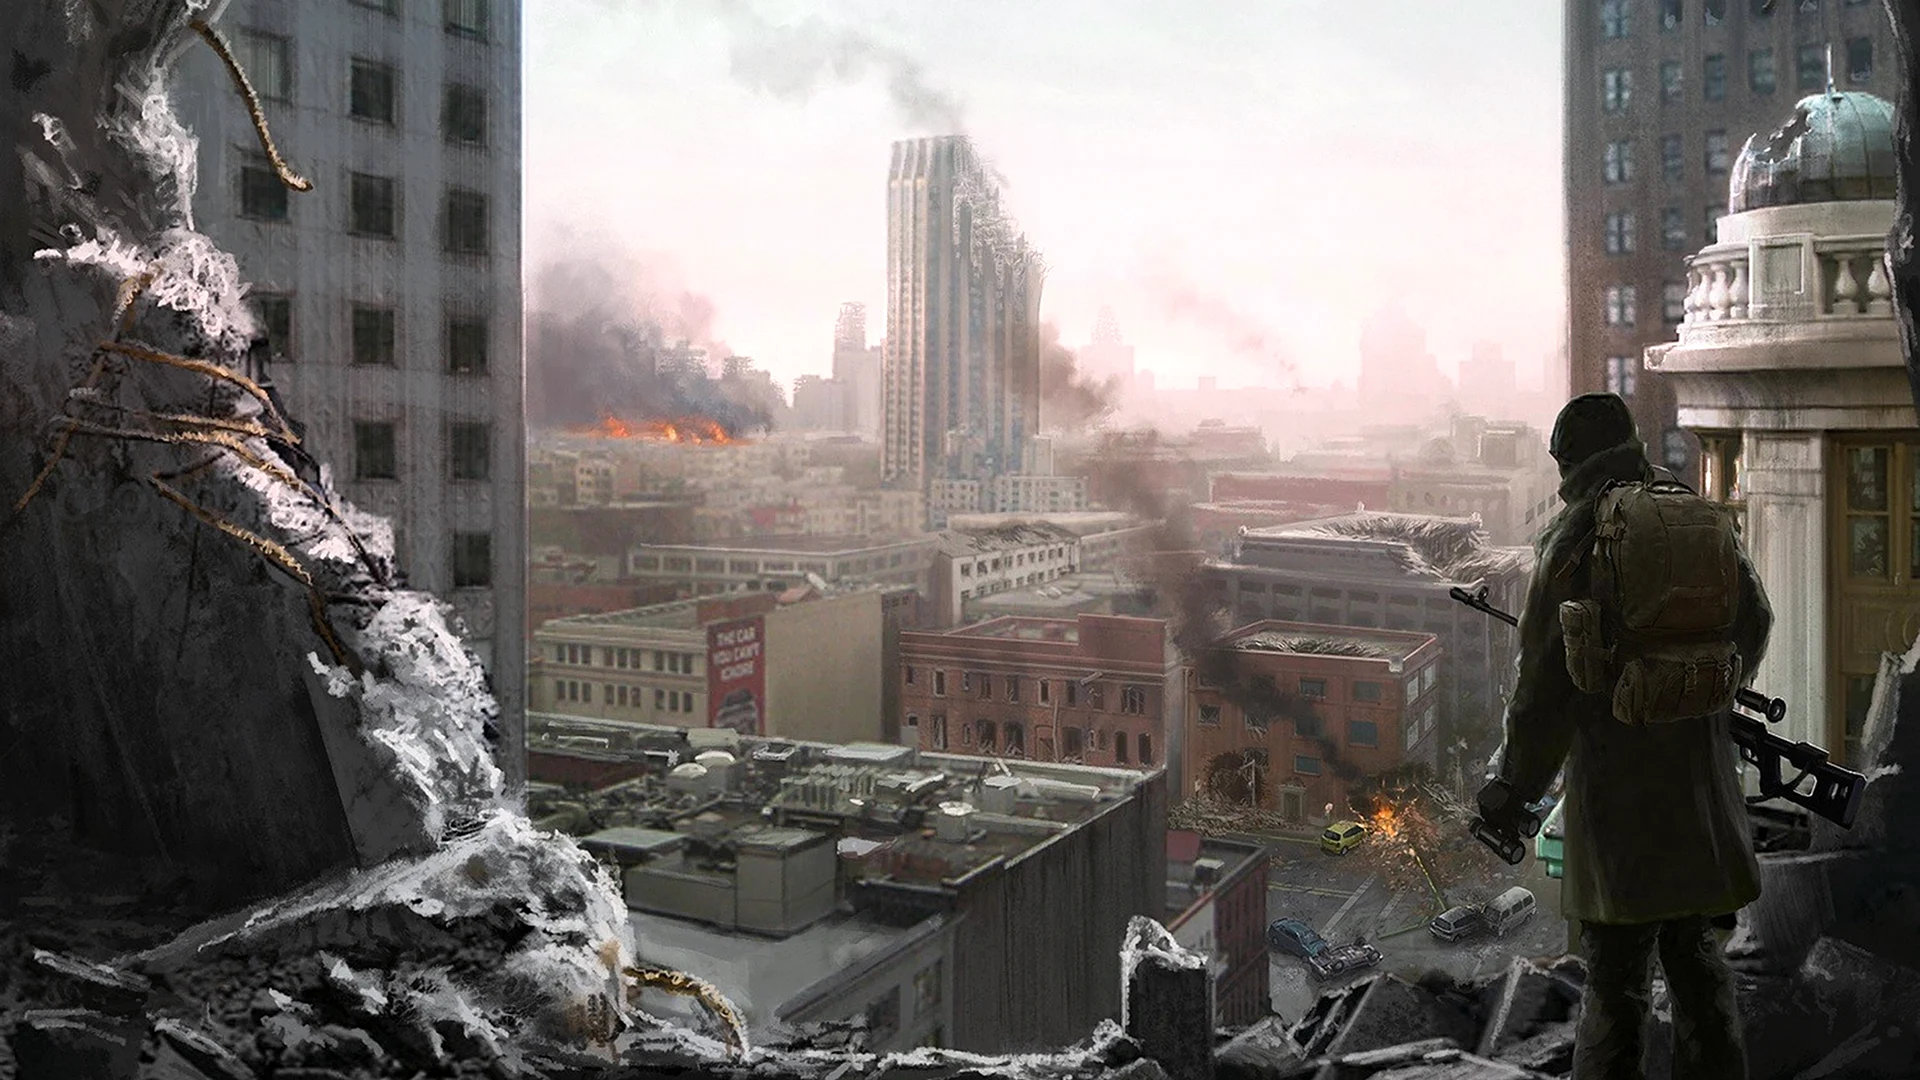 Разрушенный город зомби апокалипсис